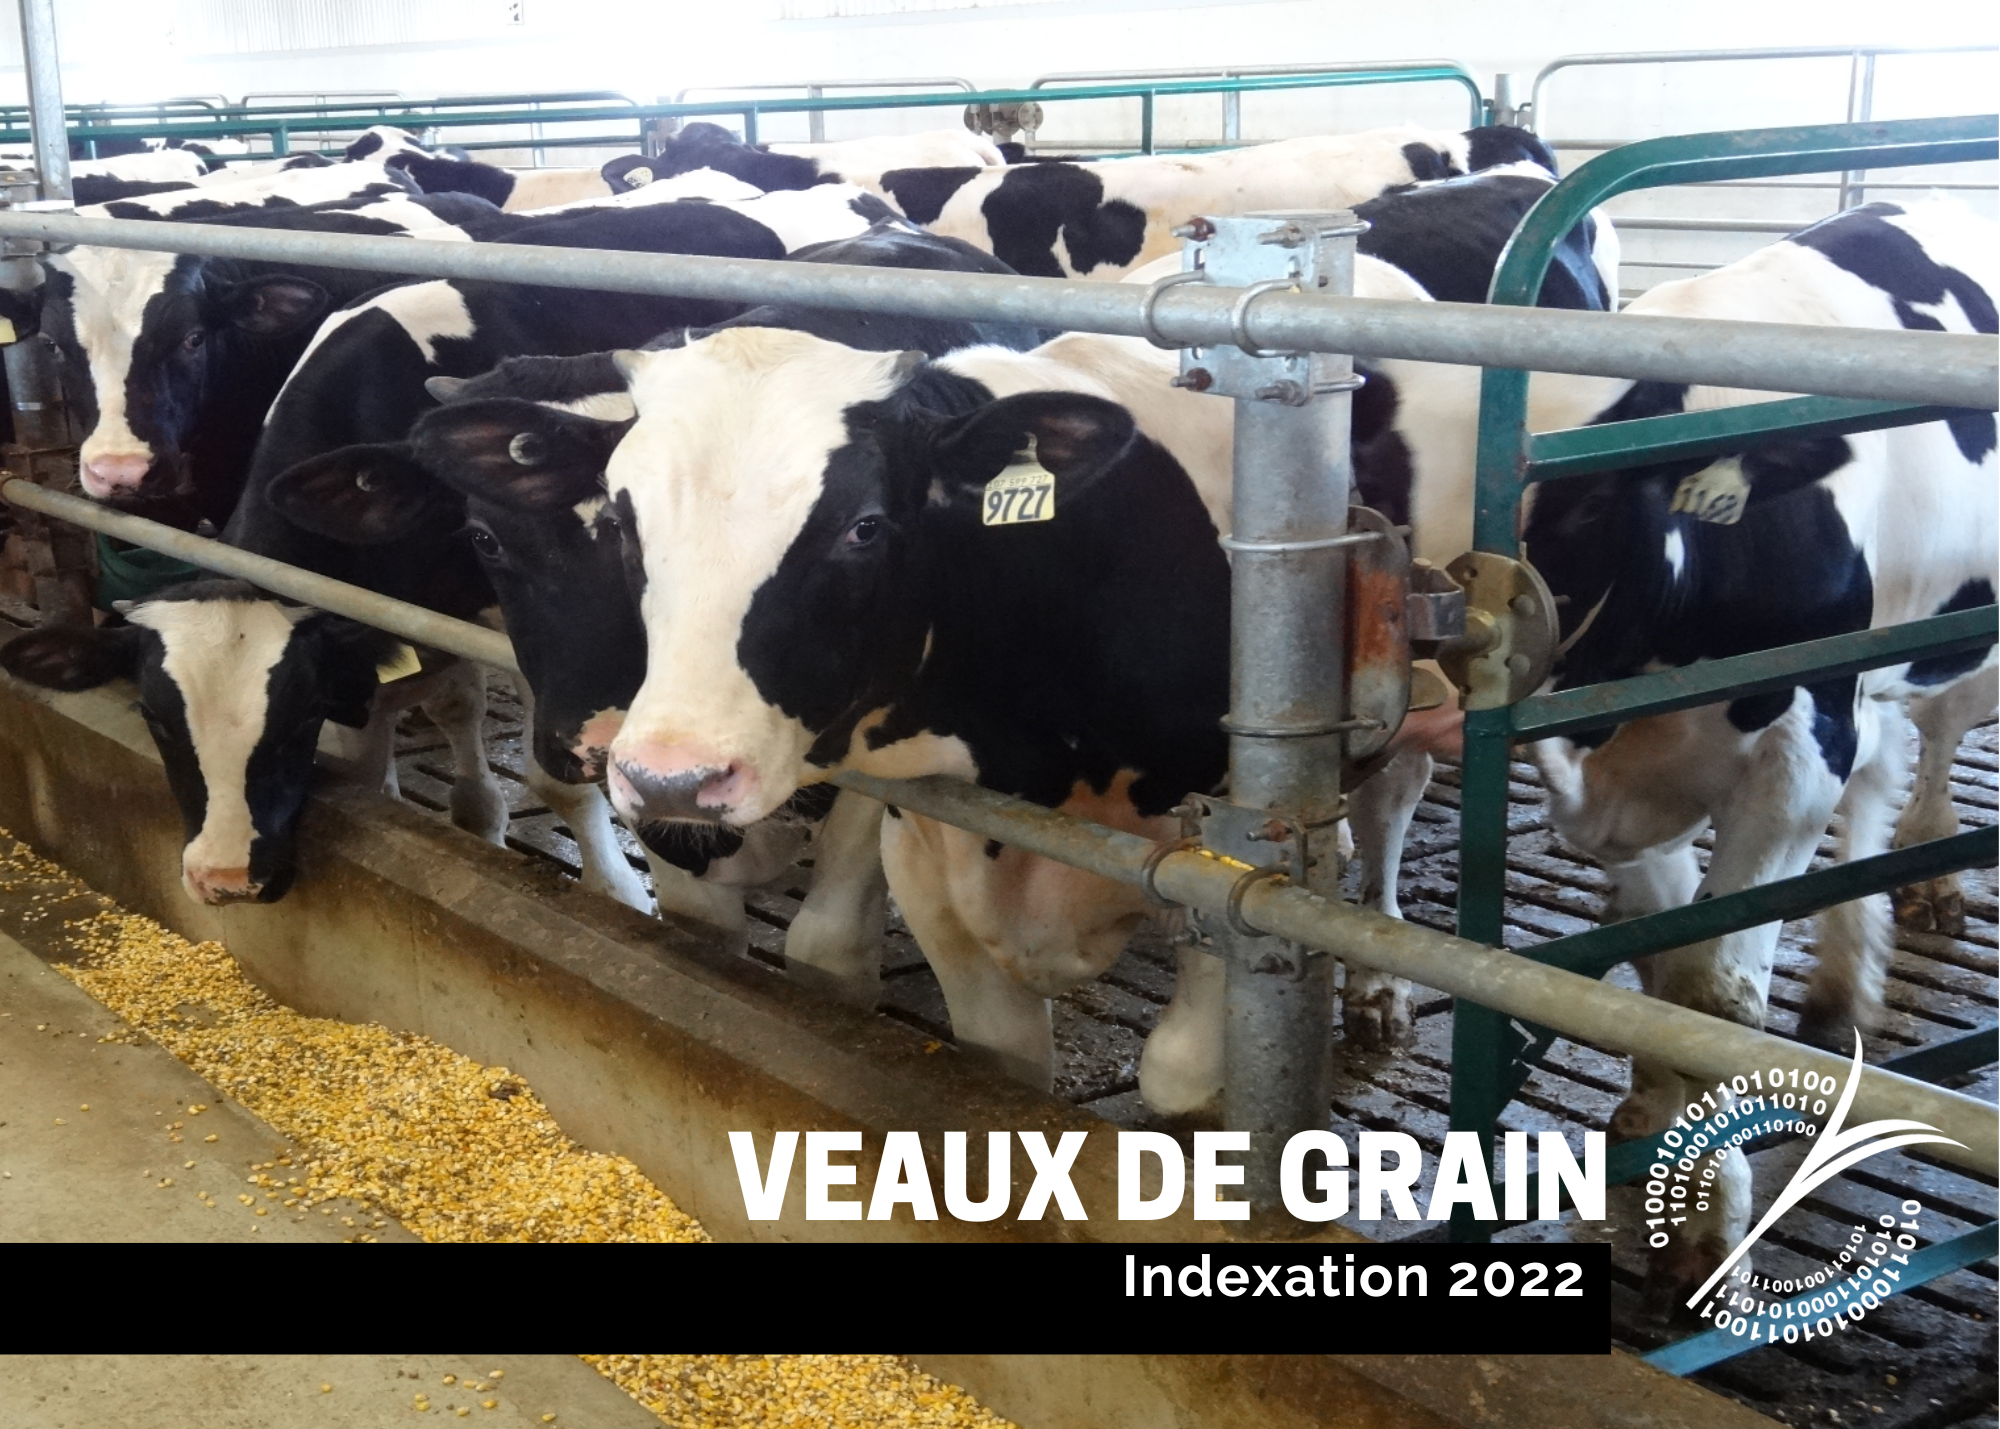 étude : Indexation 2022 - Veaux de grain